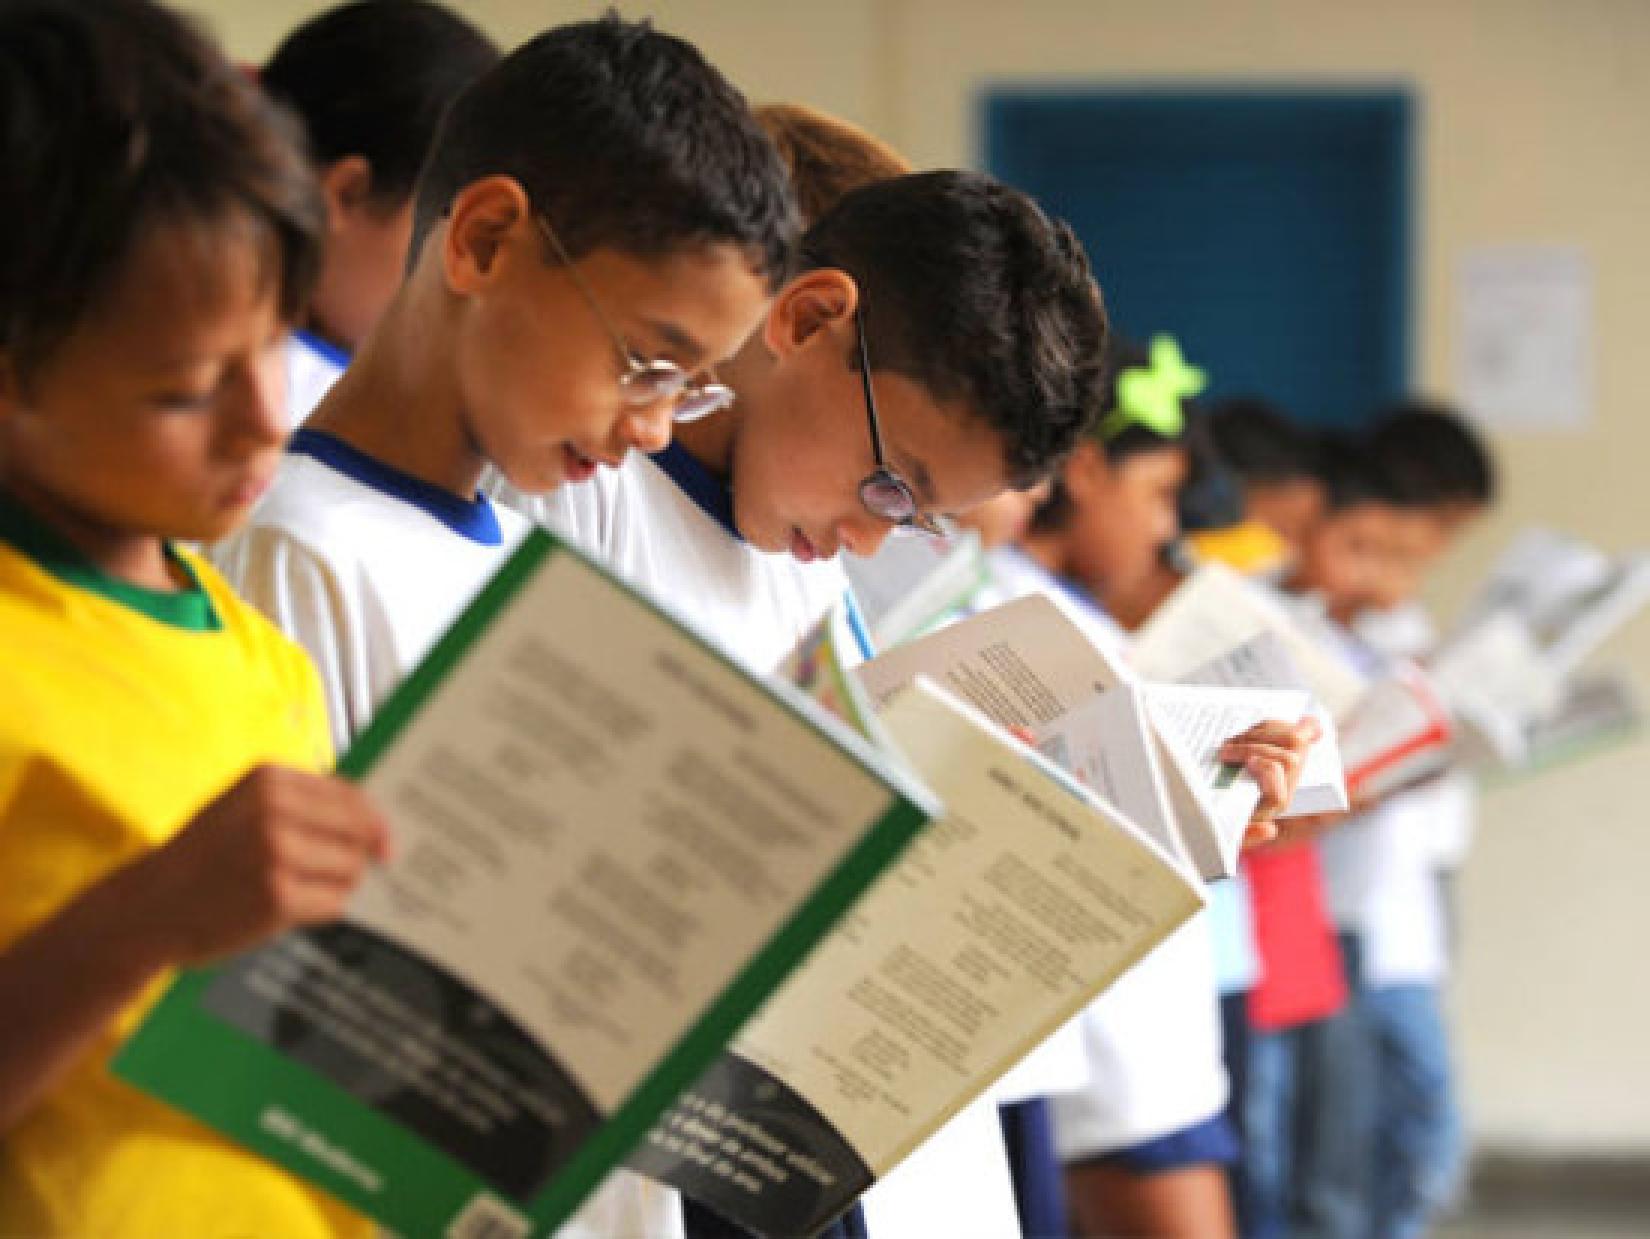 Para muitas crianças brasileiras, a educação ainda é um sonho distante. UNICEF quer garantir que nenhum jovem fique fora da escola e que todos tenham acesso a um ensino de qualidade. Foto: EBC